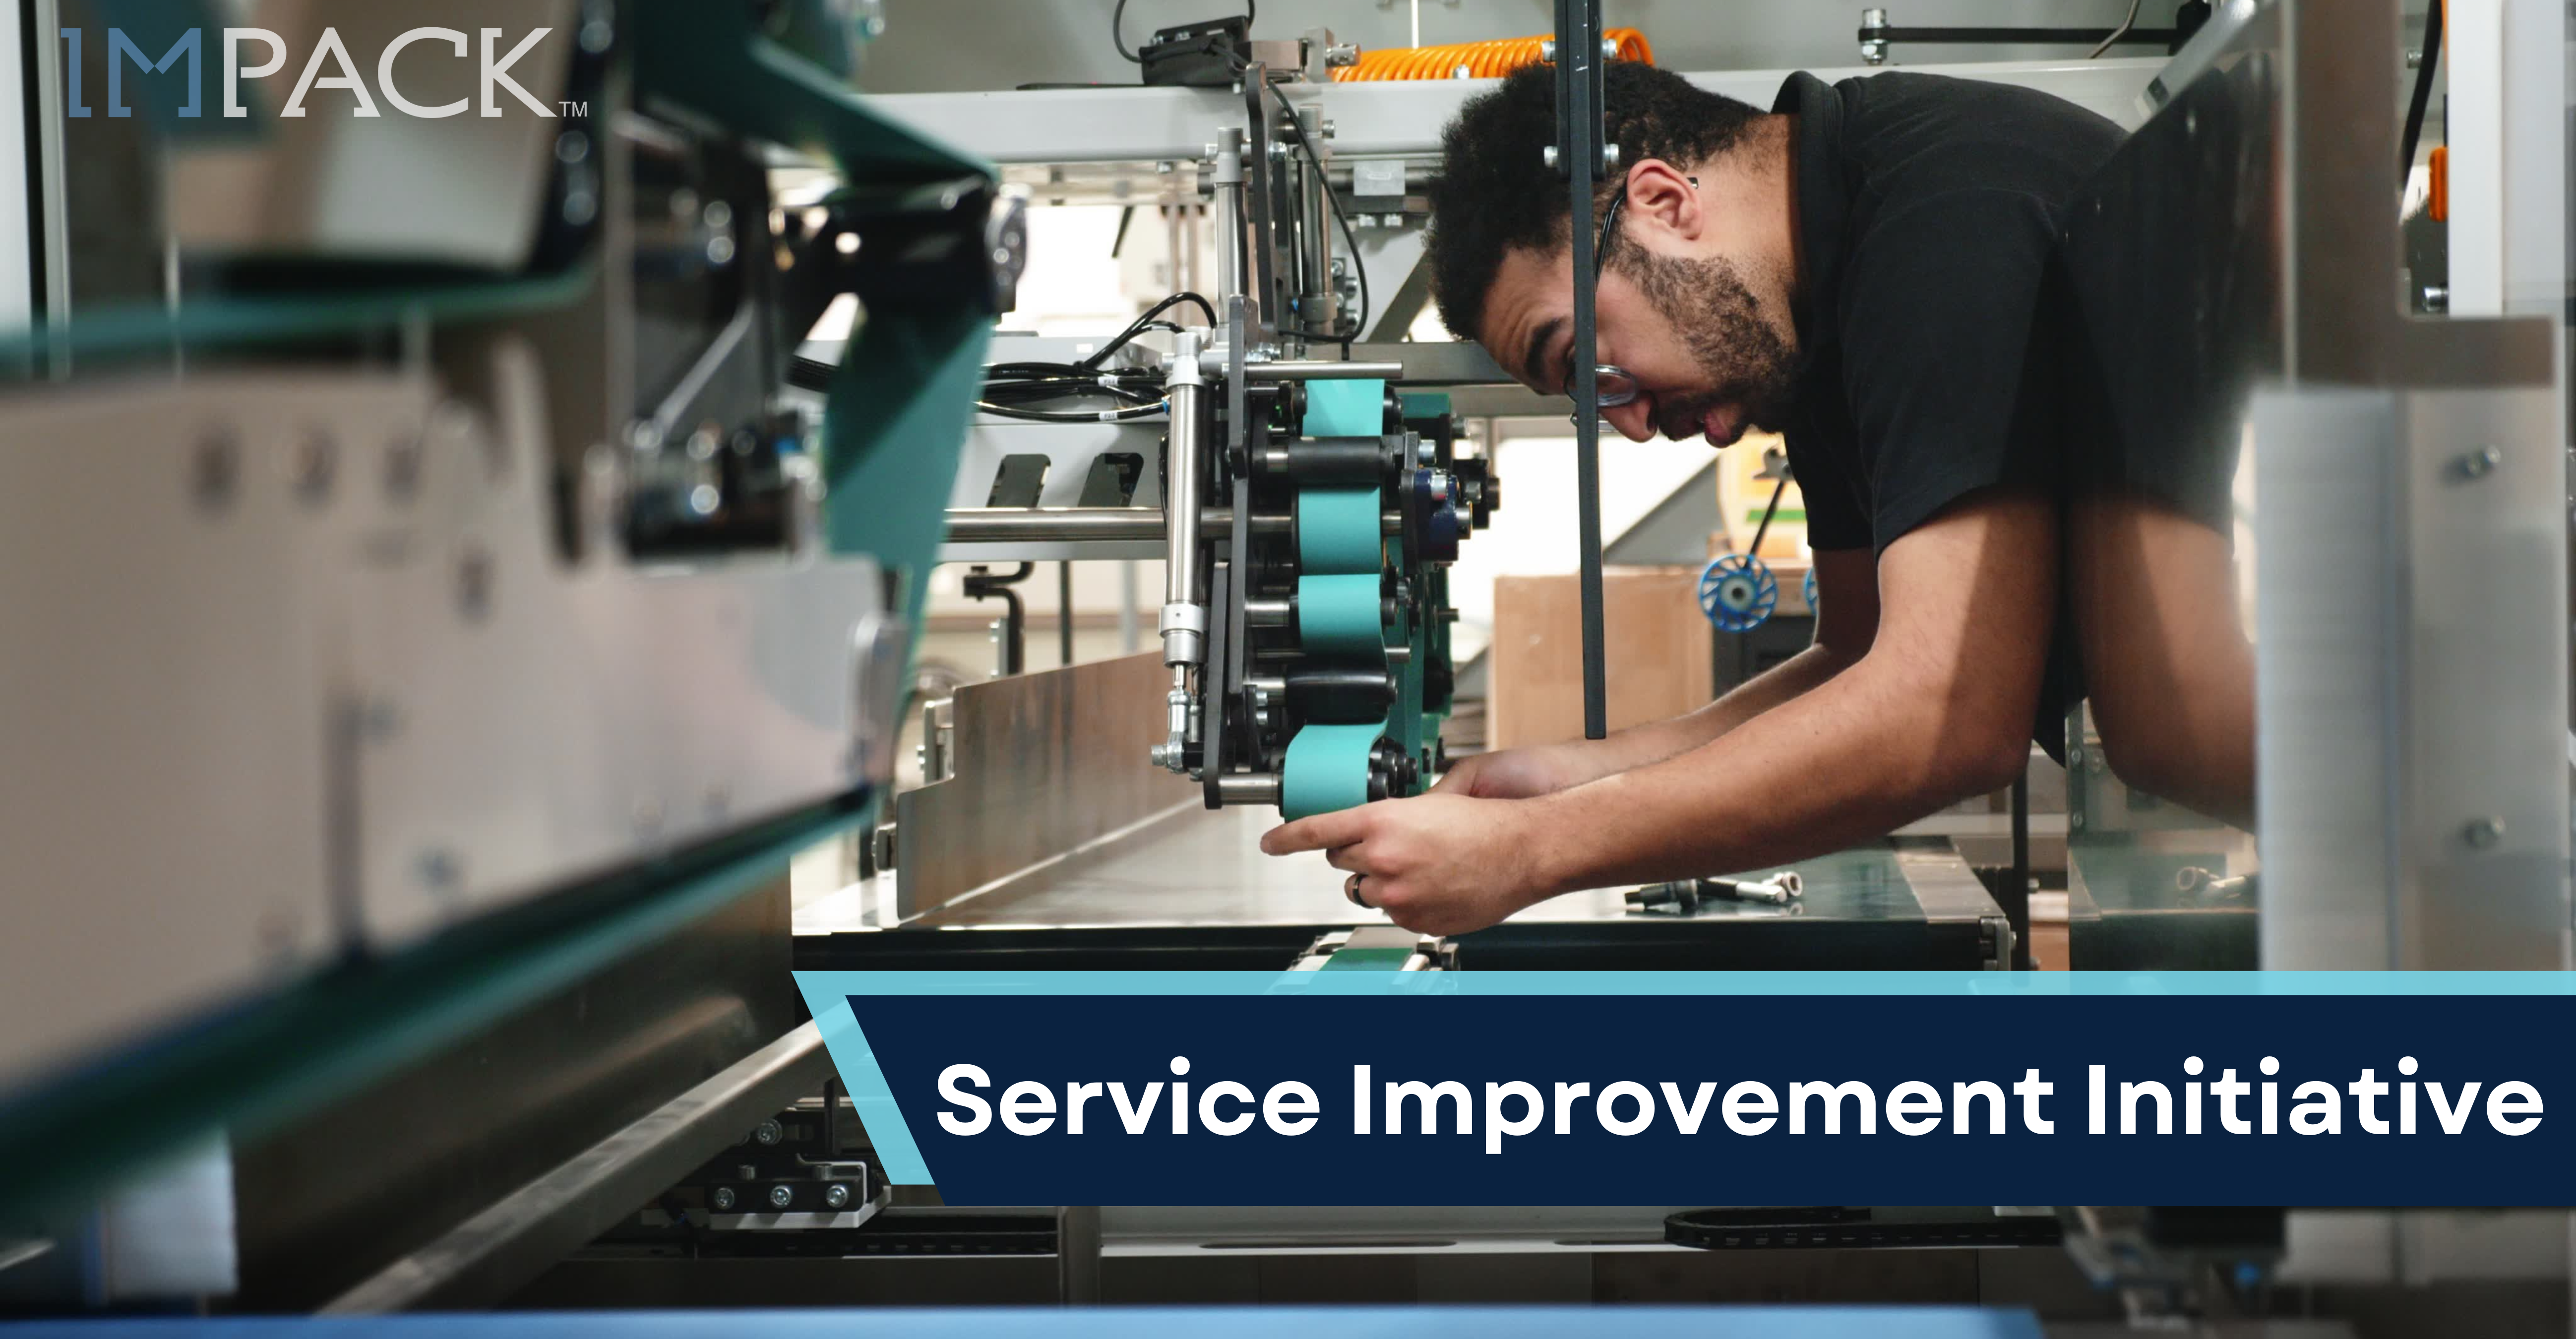 Service Improvement Initiative at IMPACK